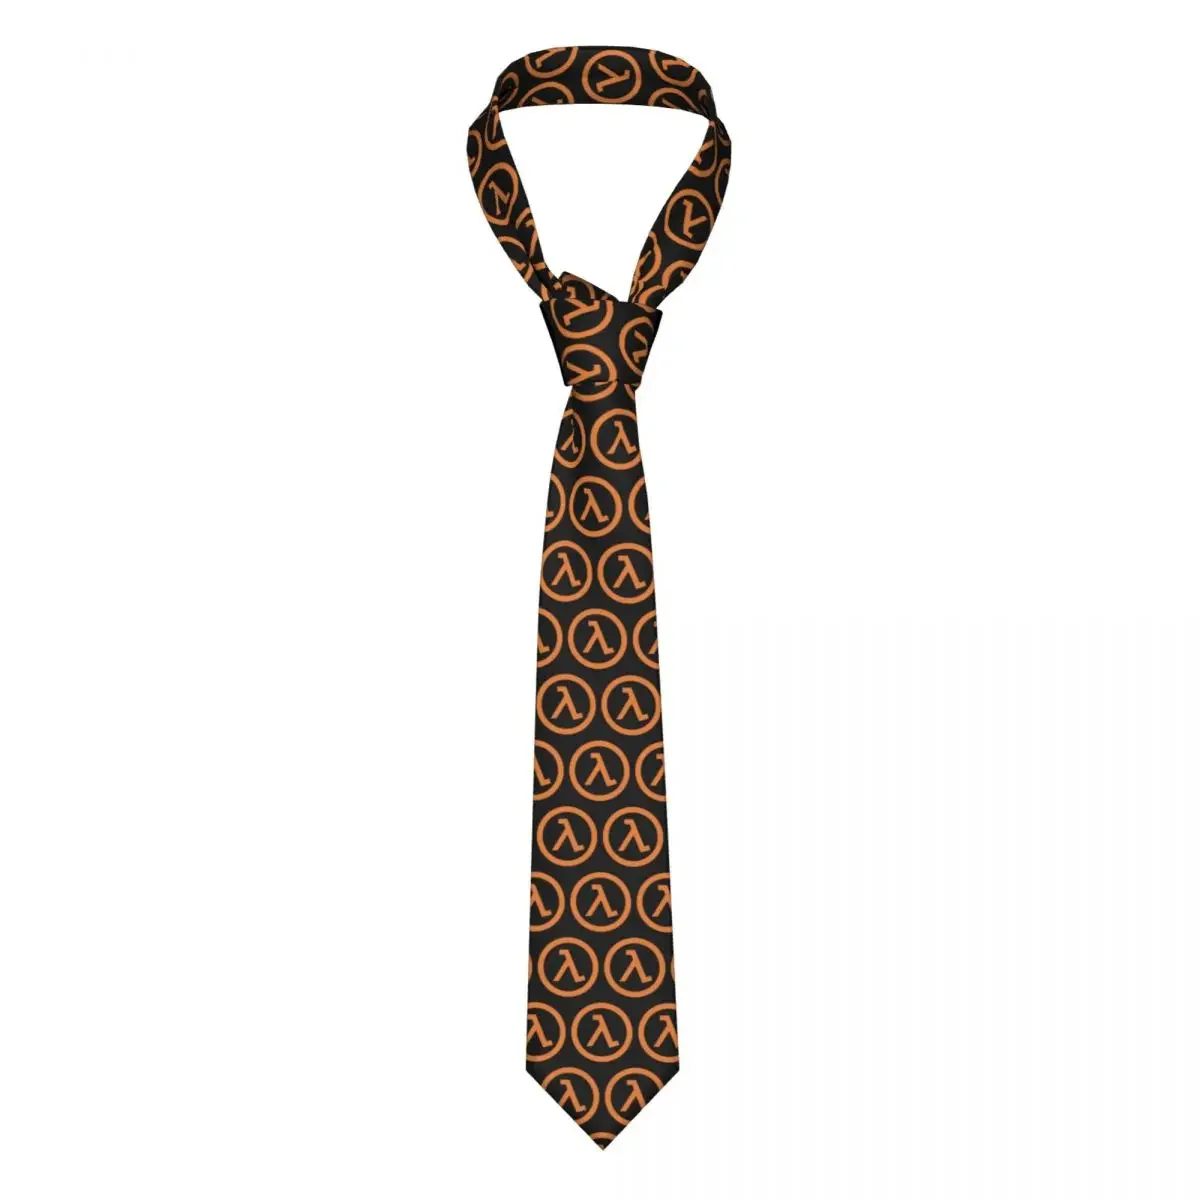 

Half Life Lambda Tie Ties Daily Wear Cravat Business Necktie Shirt Accessories